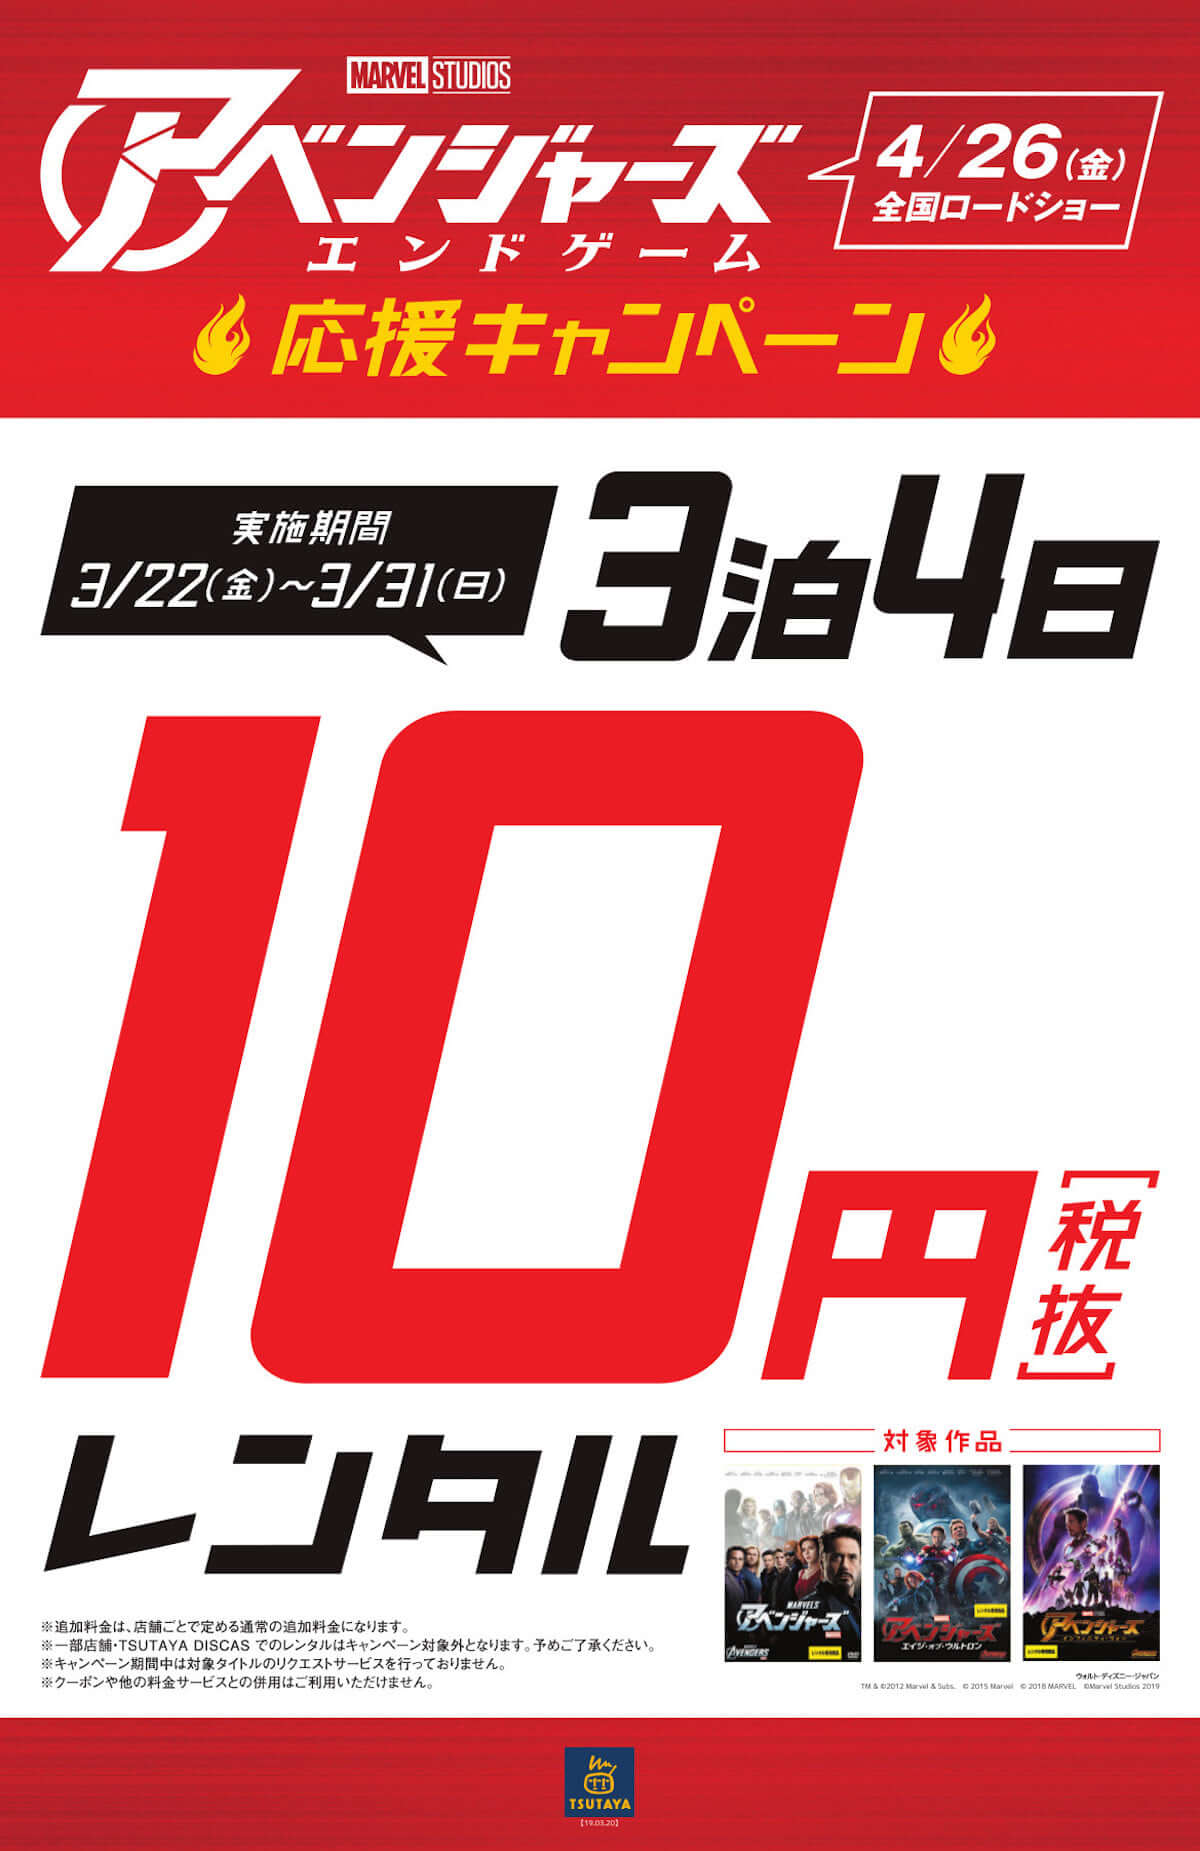 アベンジャーズ 過去3作品がtsutayaで3泊4日レンタル10円 アベンジャーズ エンドゲーム 応援キャンペーン Qetic